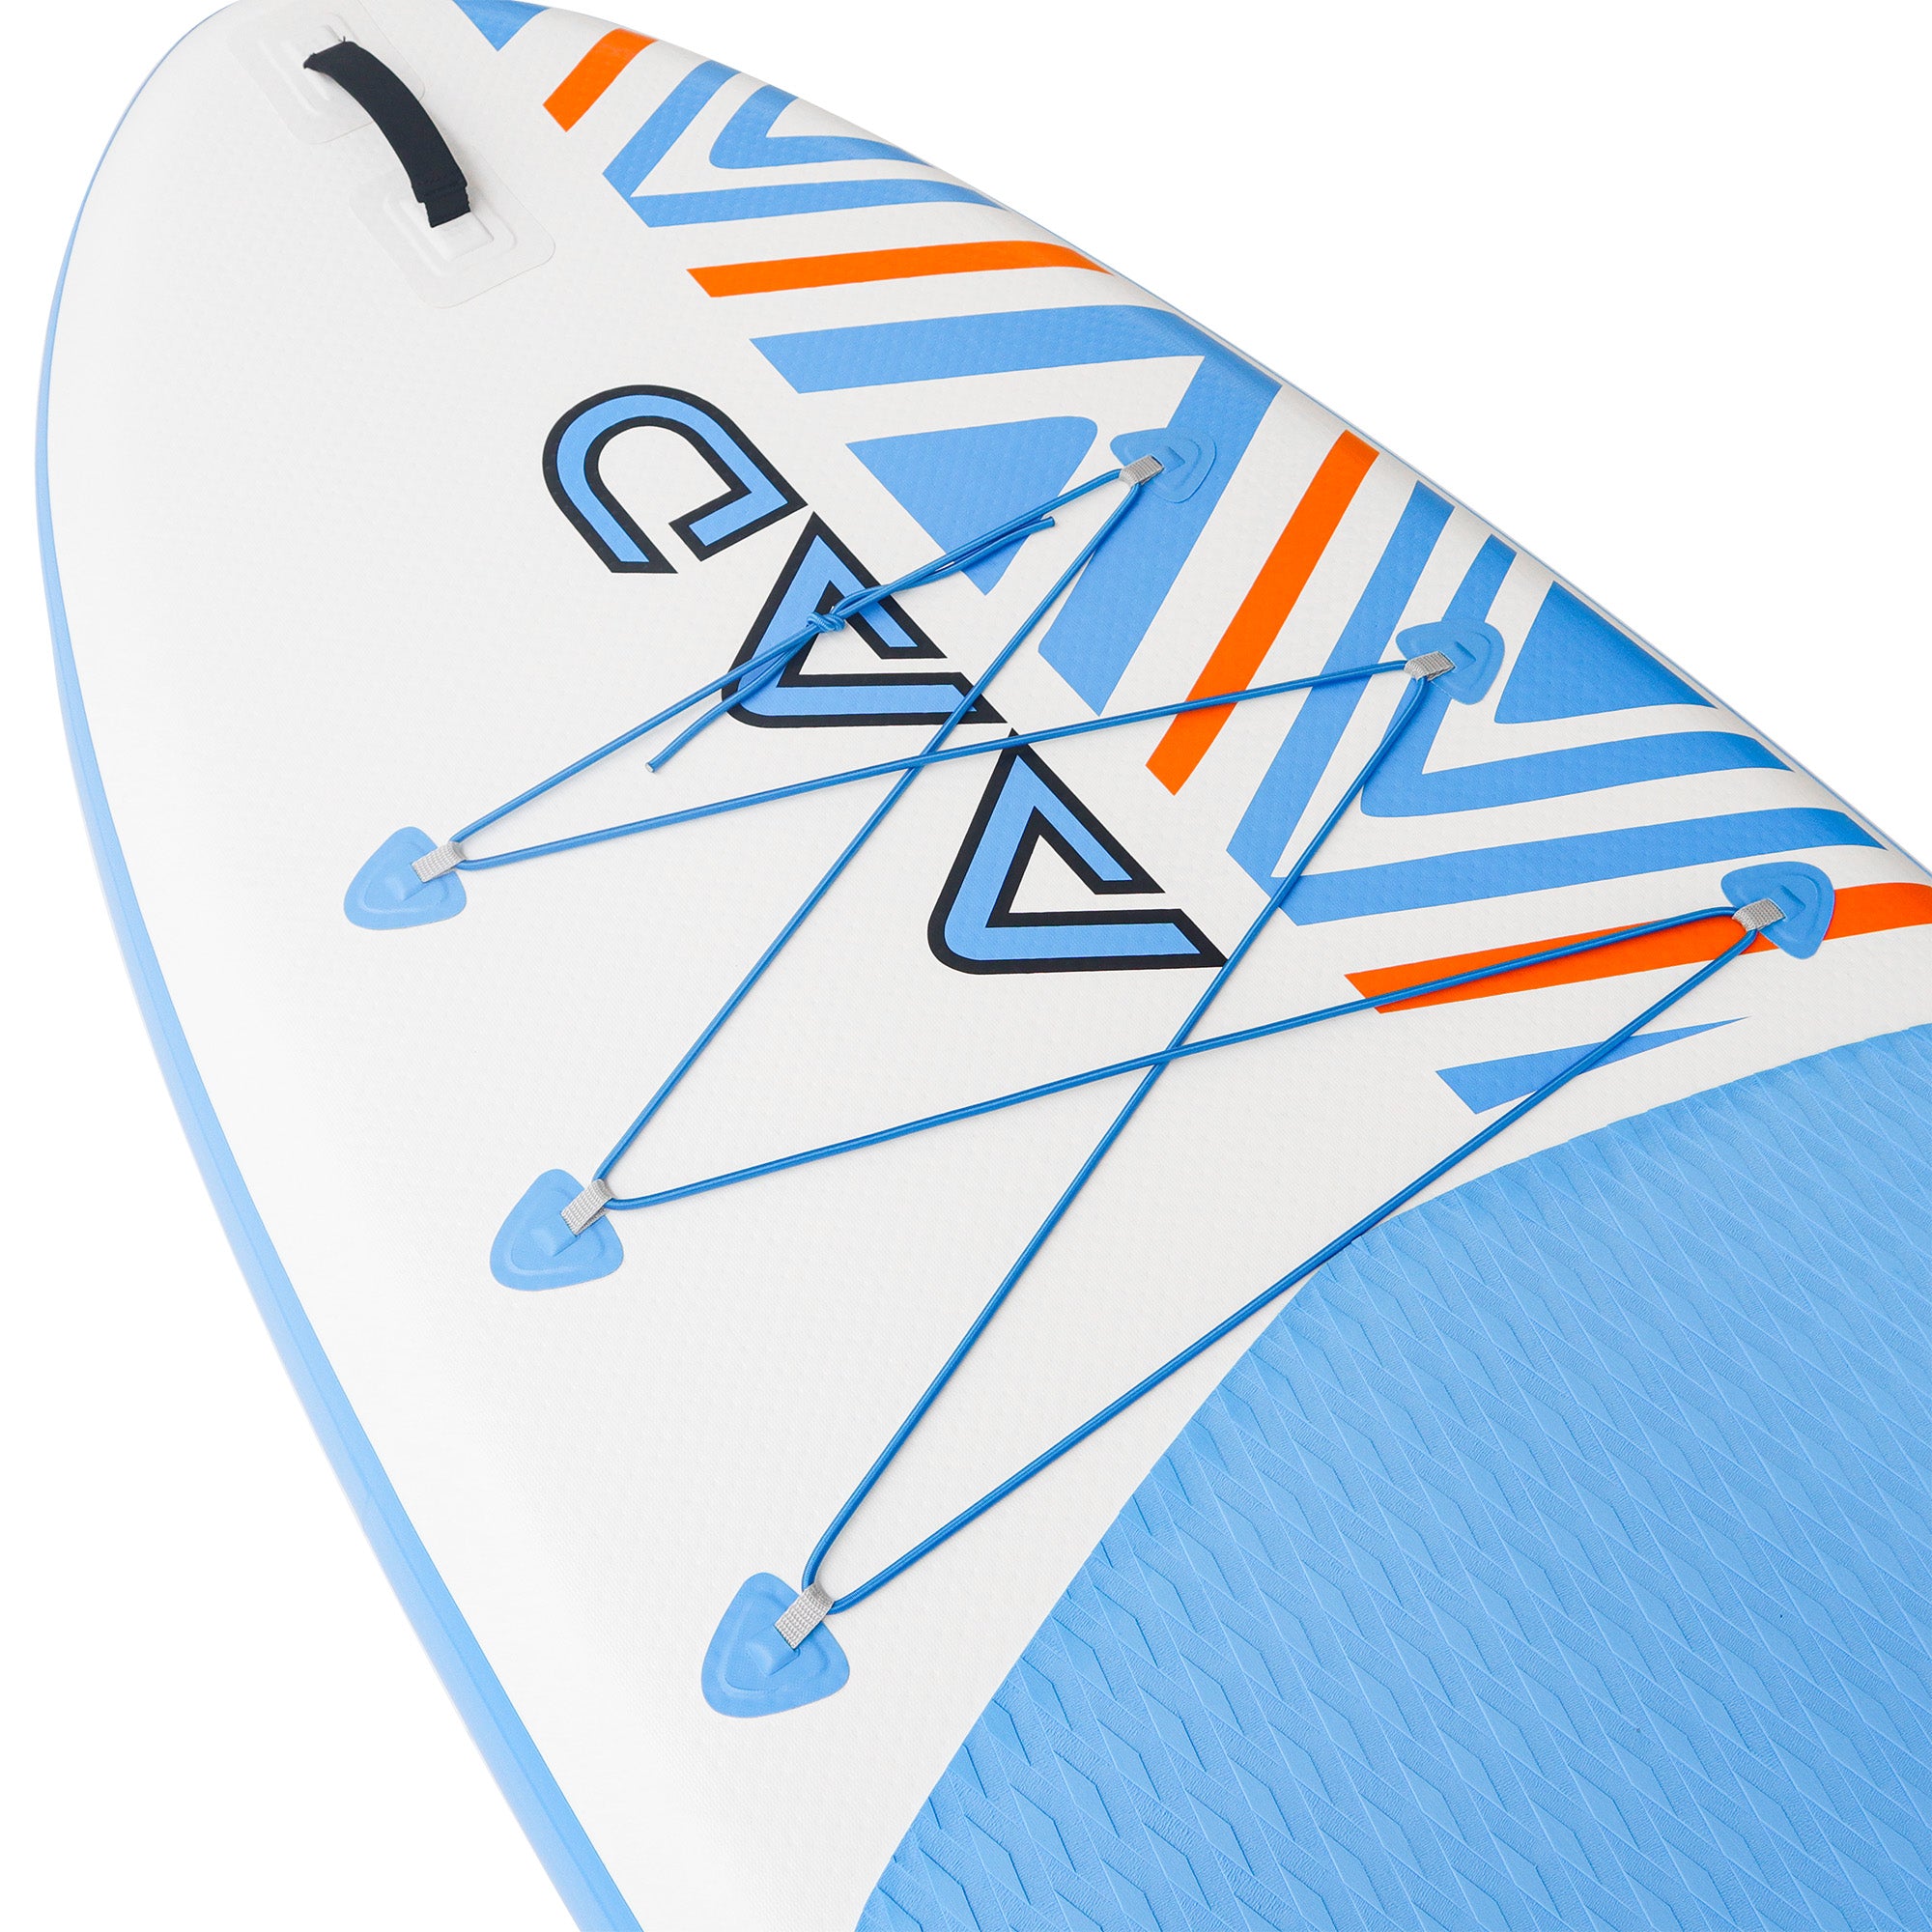 AKD SeaStar Stand Up Paddle Board 10'8” 325x86x15cm SUP Board 165kg/346L (Blue)